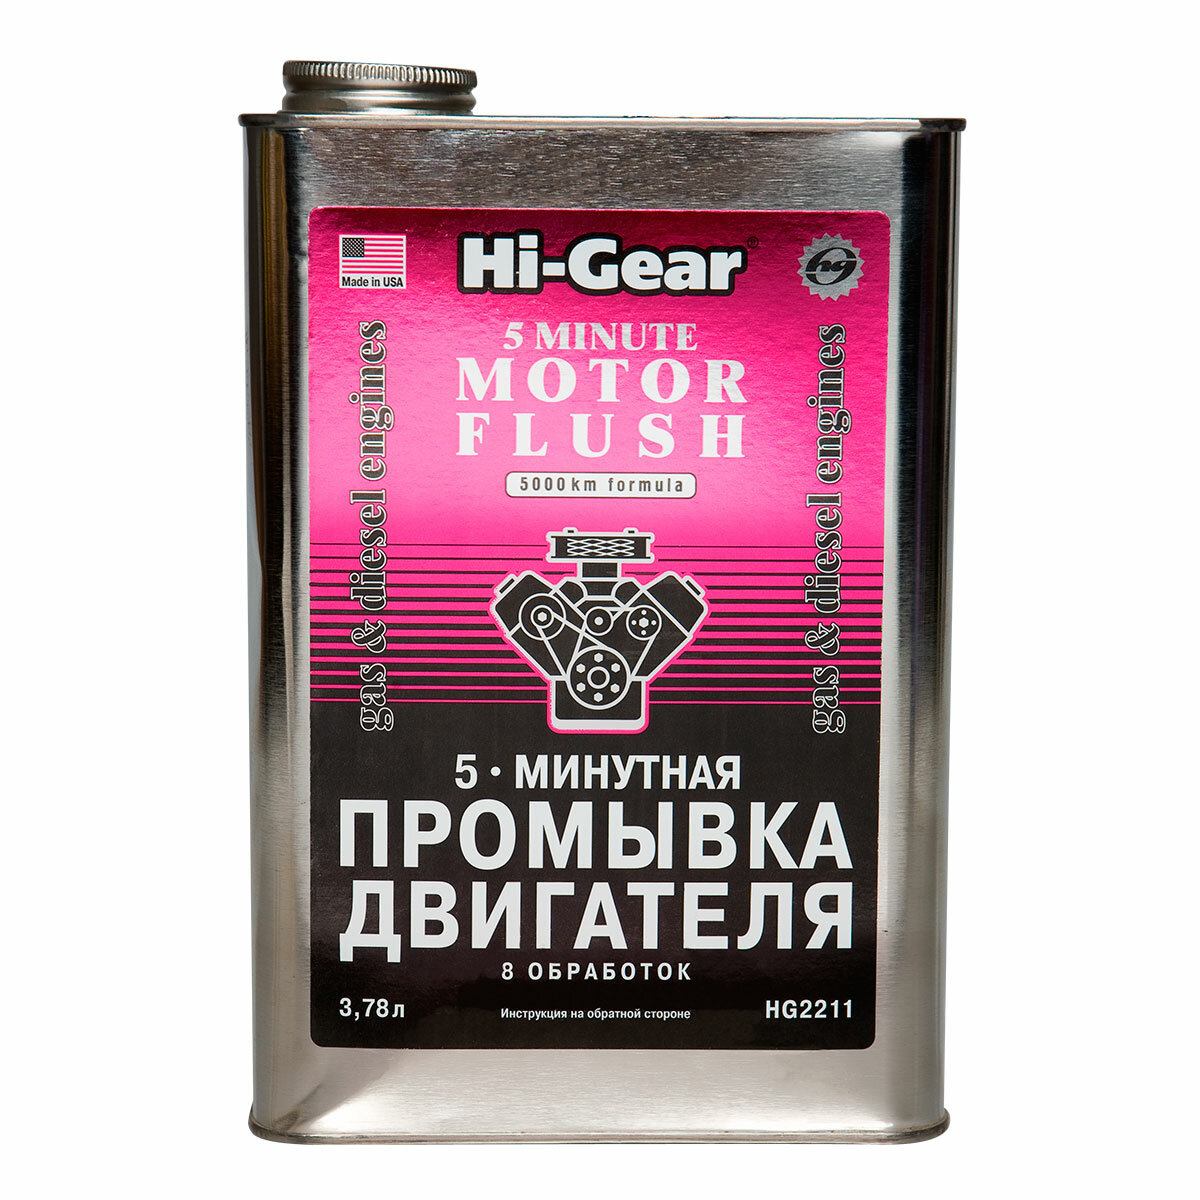 5-ти минутная промывка двигателя Hi-Gear, 3.78 л. HG2211